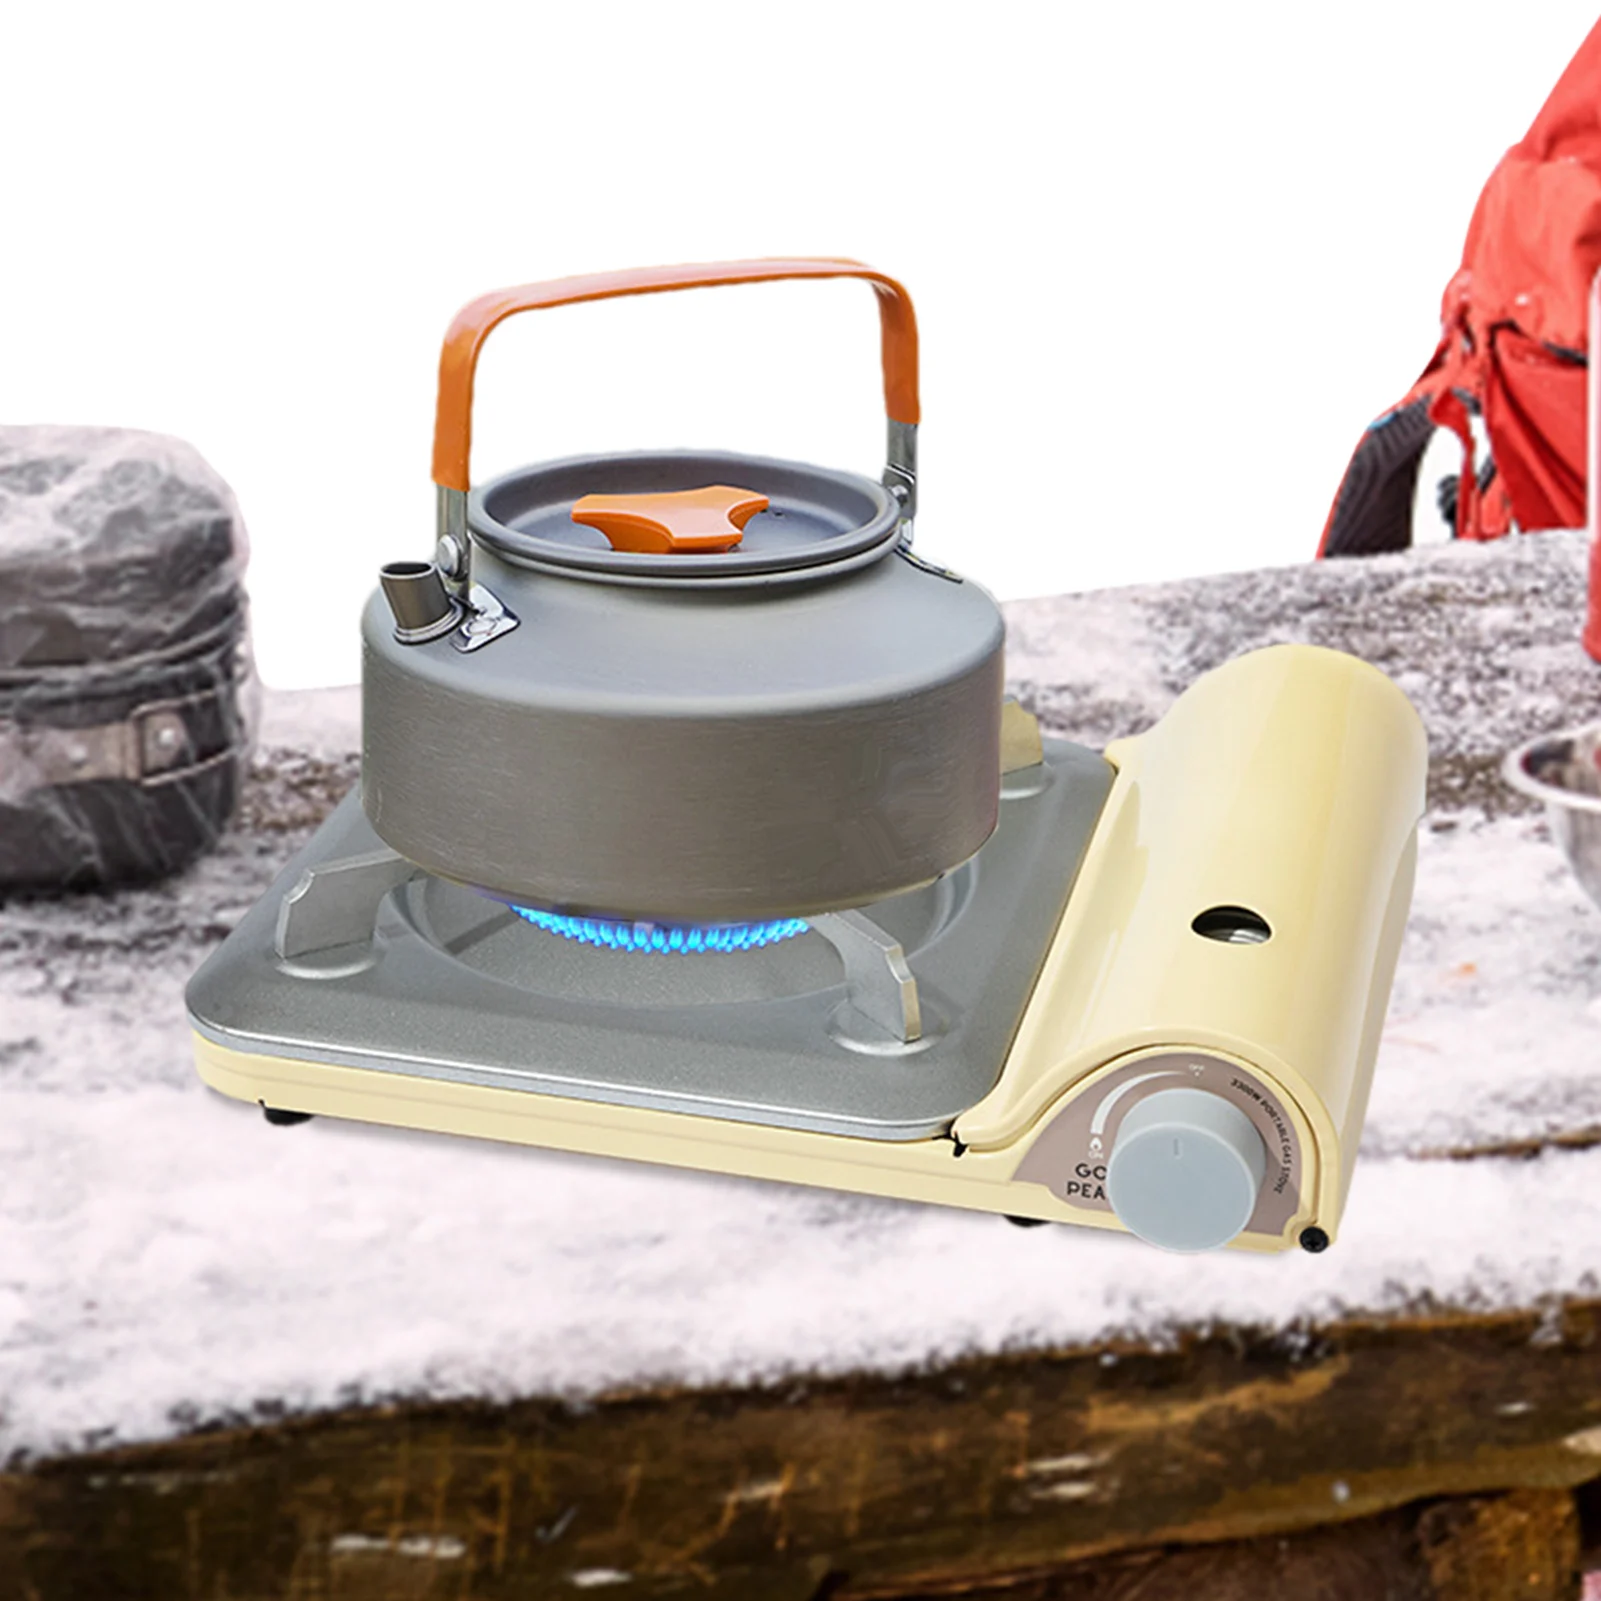 

Cassette Burner Lightweight Stove Kitchen Equipment Wind-Resistance Burner For Outdoor Ing Hiking Cooking